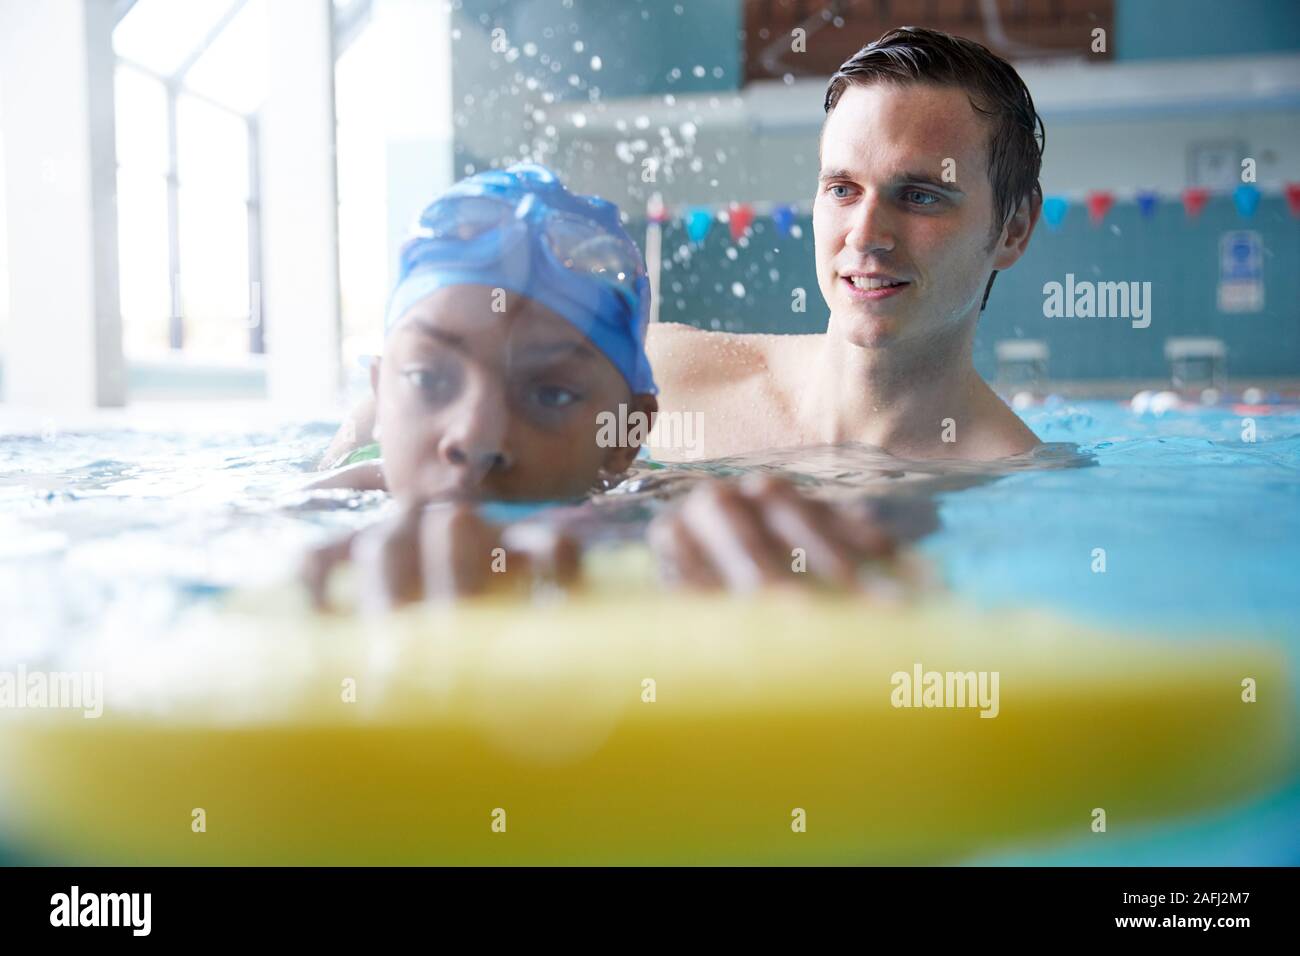 L'entraîneur de natation homme Boy Holding donnant un flottement d'une leçon en piscine Banque D'Images